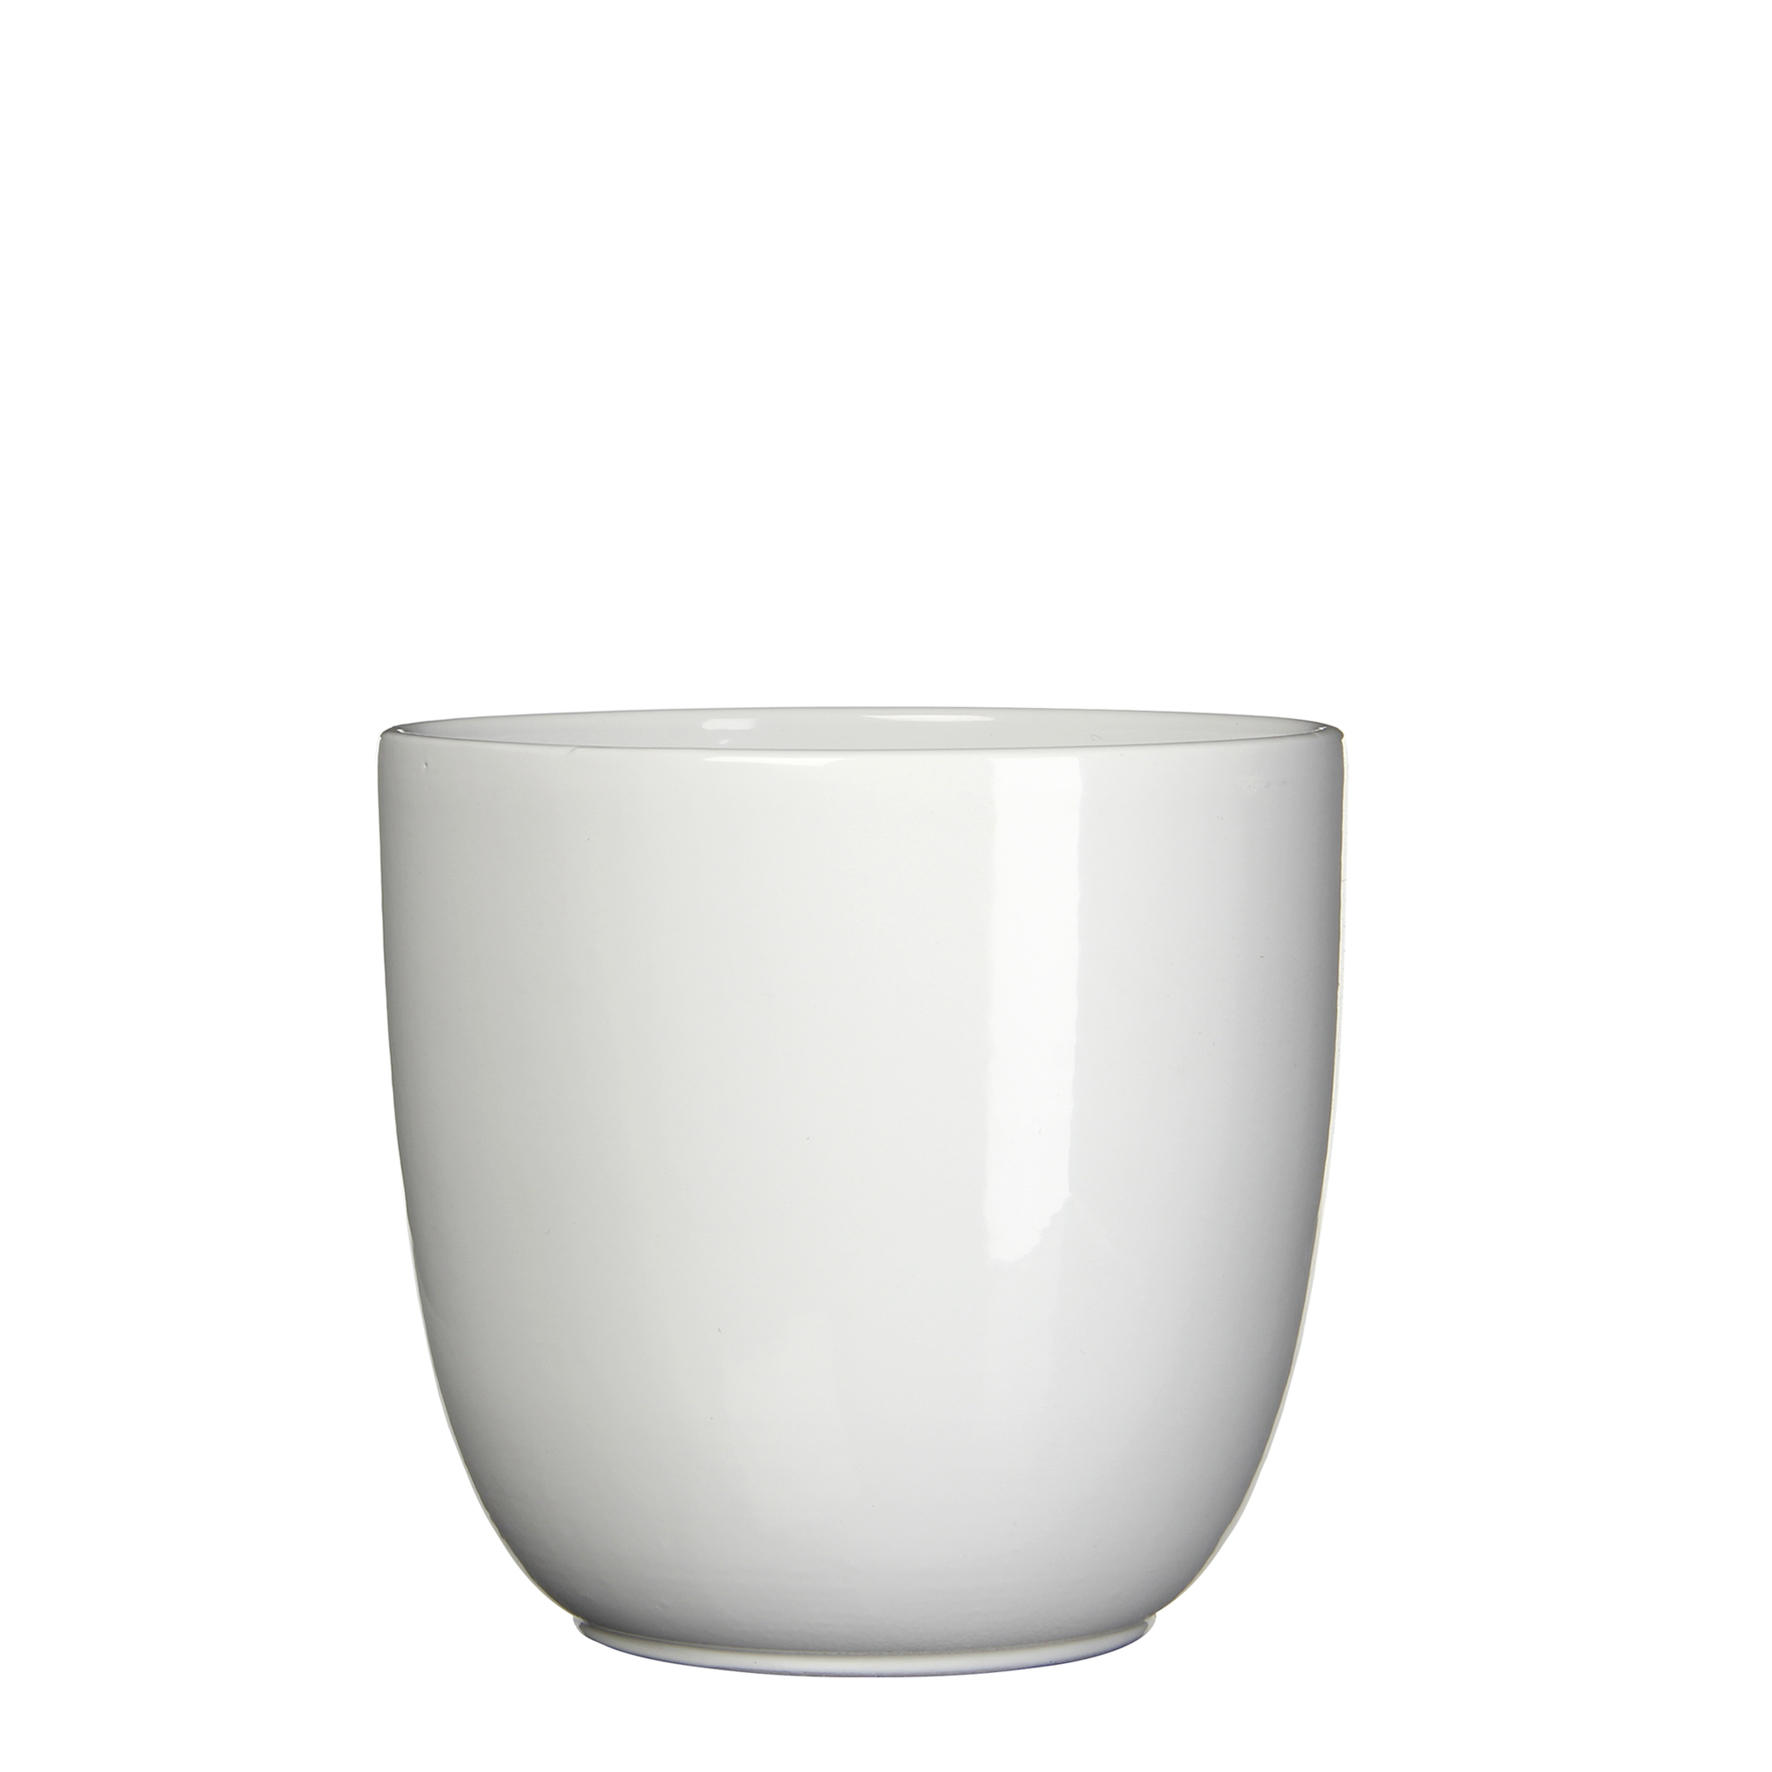 TEGLA ZA BILJKE  keramika  - bijela, Basics, keramika (22,5/20cm)